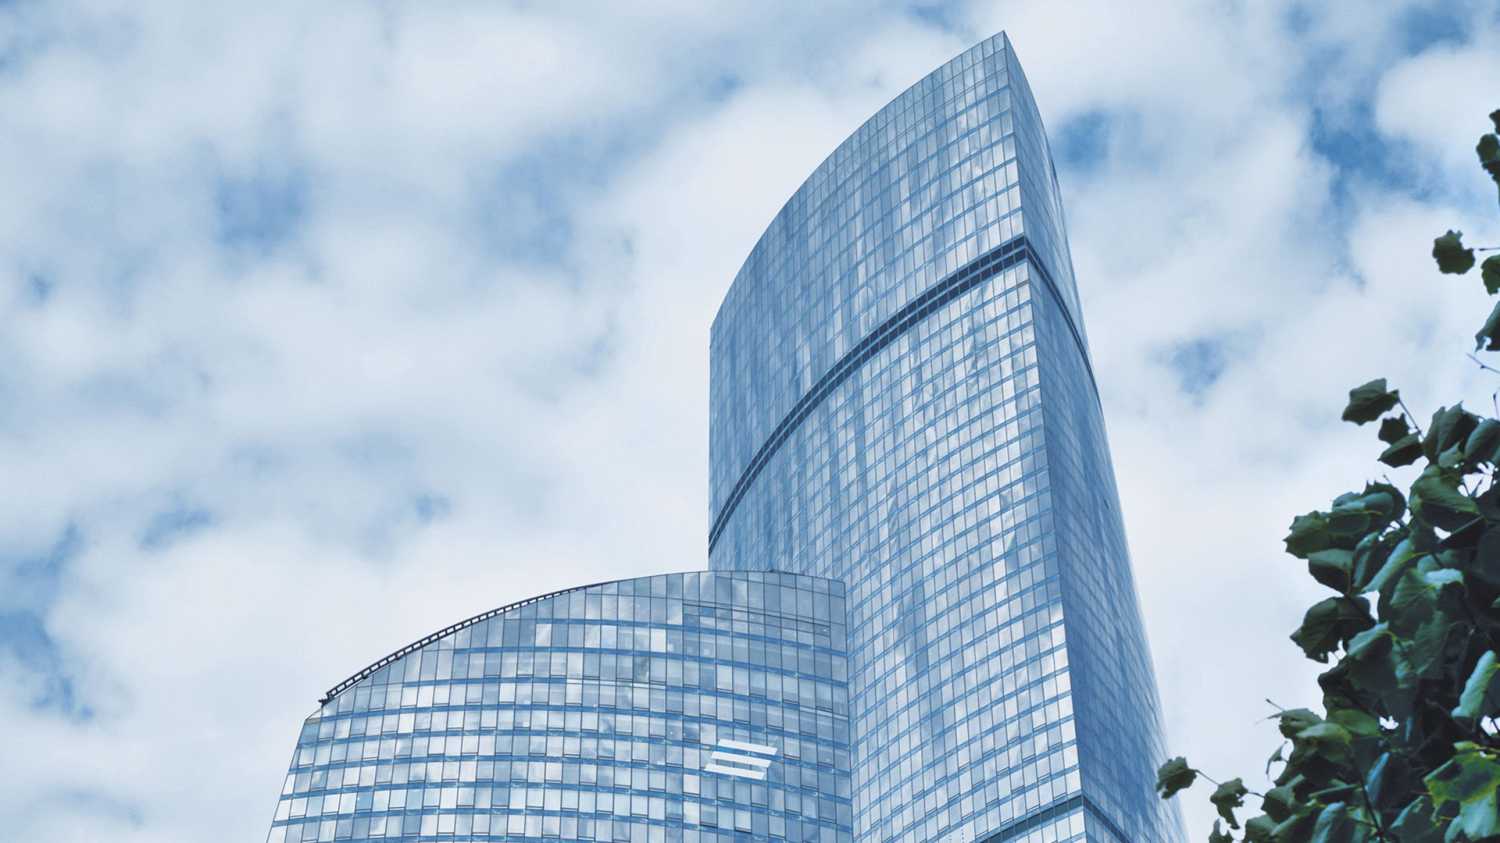 Офисы занимают с 3 по 60 этаж здания, а на 64-67 этаже расположены видовые Sky-офисы с потолками 3,5 метра